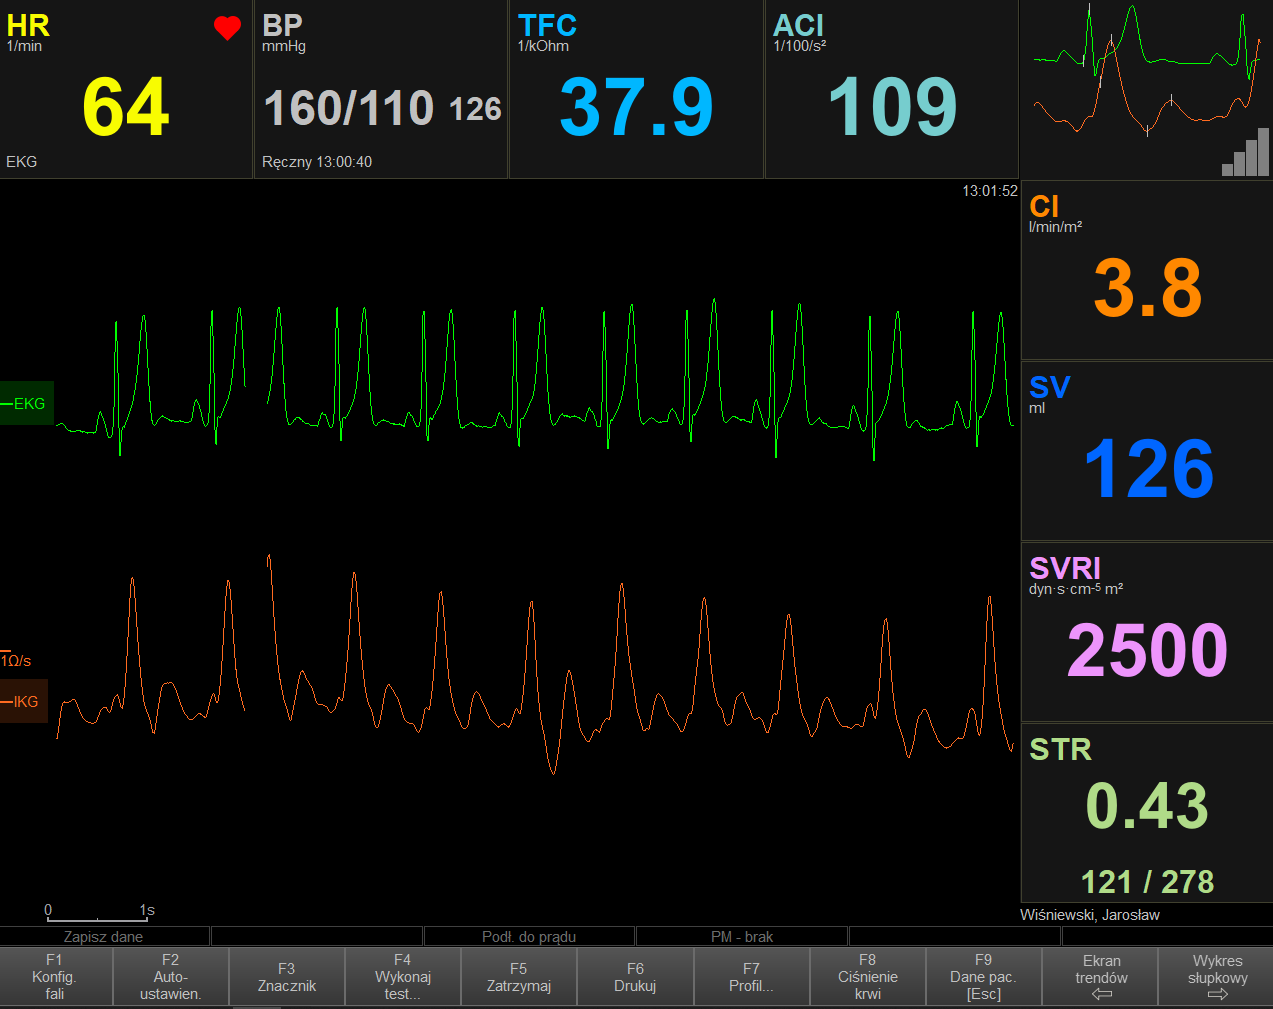 Monitory do pomiarów hemodynamicznych serca i krwi EM-MED CardioScreen 1000